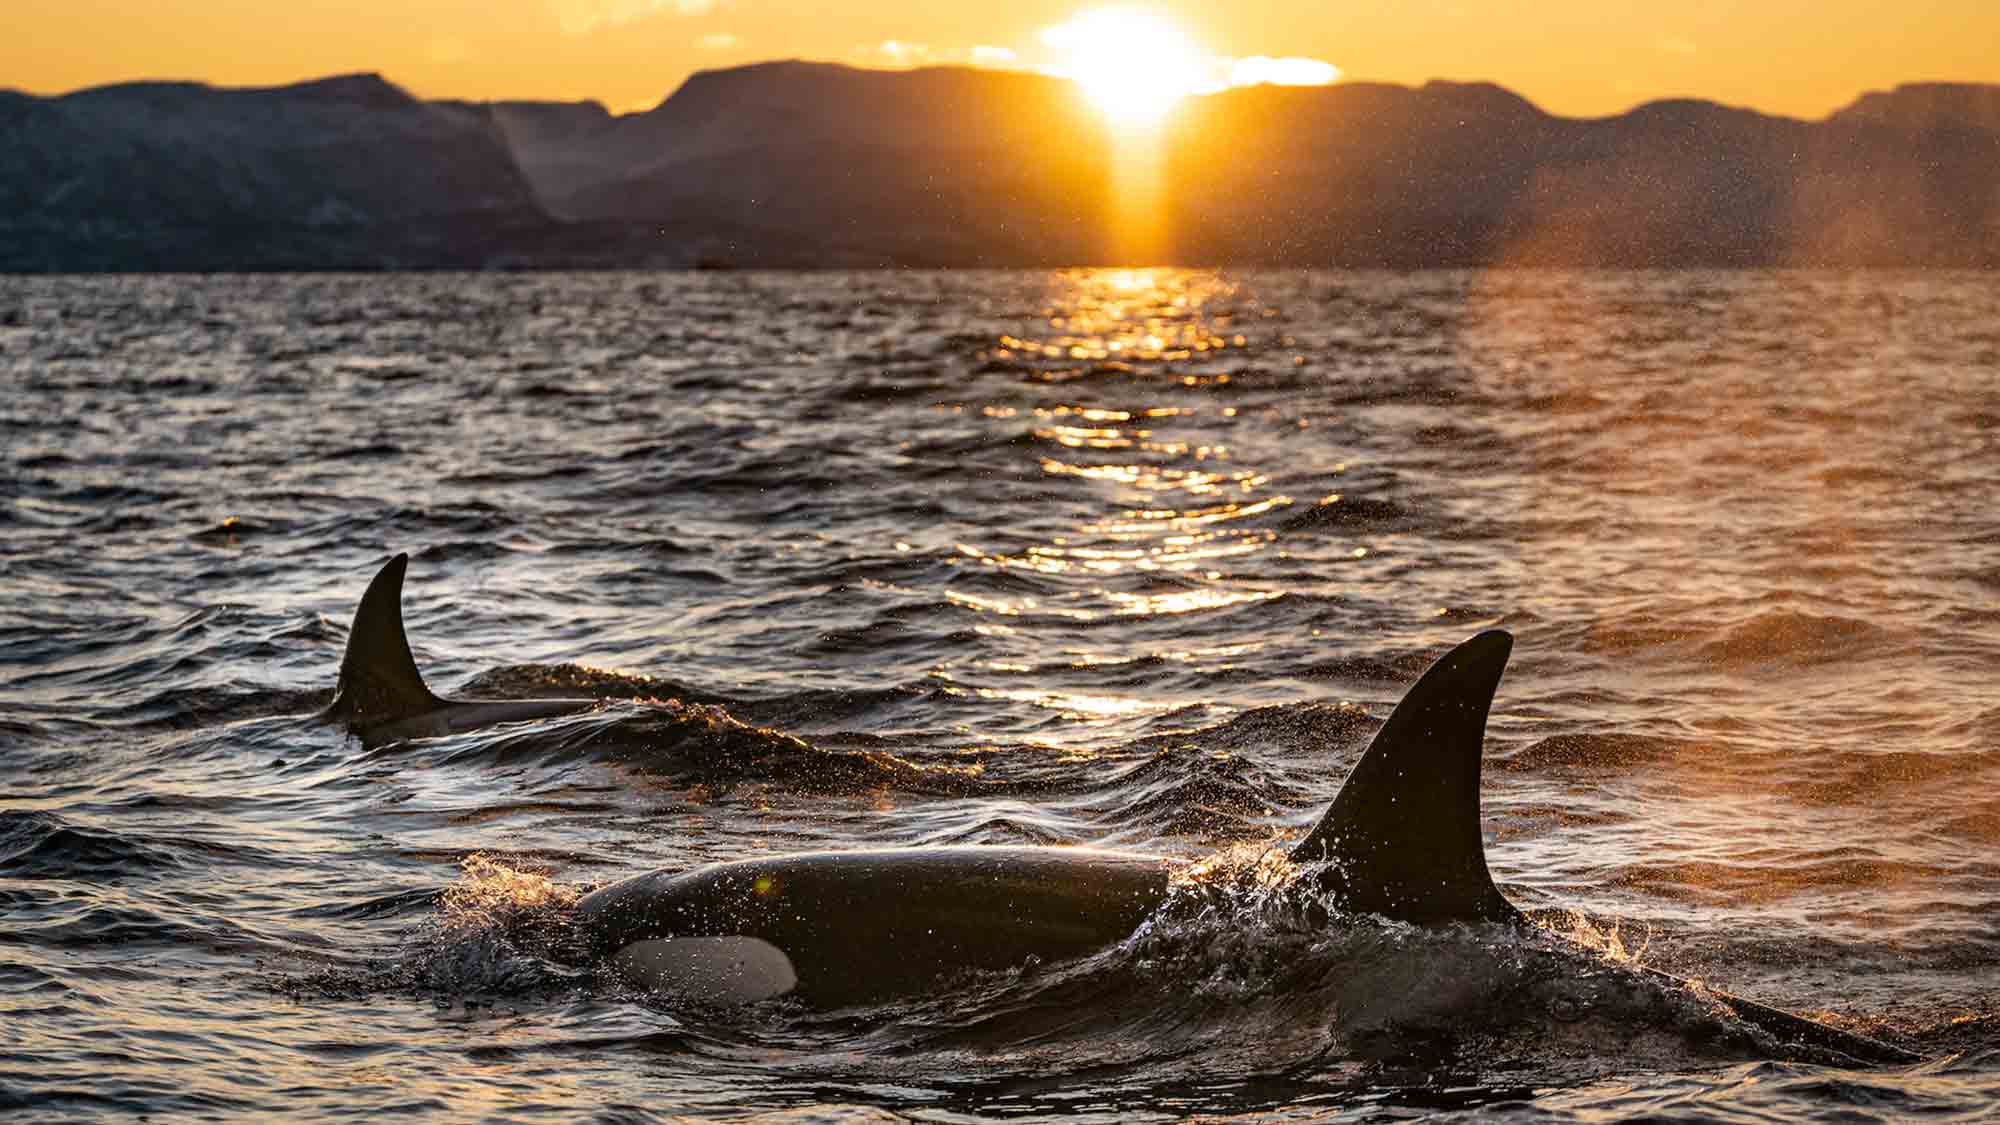 Spanien: Segler schießen auf vom Aussterben bedrohte Orcas! OceanCare kritisiert Vorfall als inakzeptabel und skandalös.